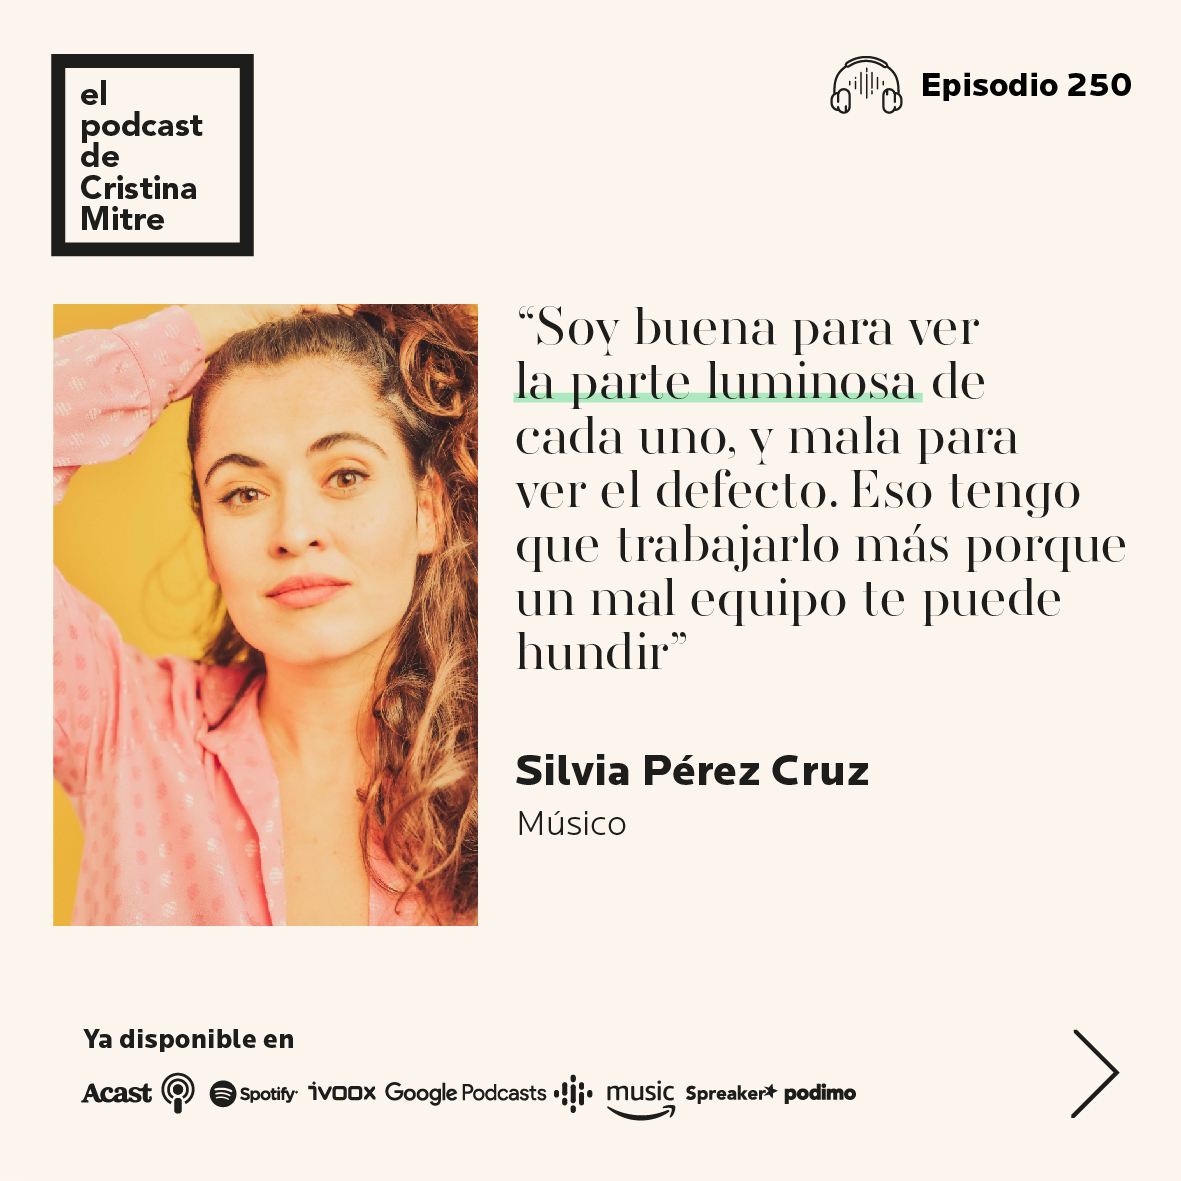 el podcast de cristina Mitre Silvia perez cruz